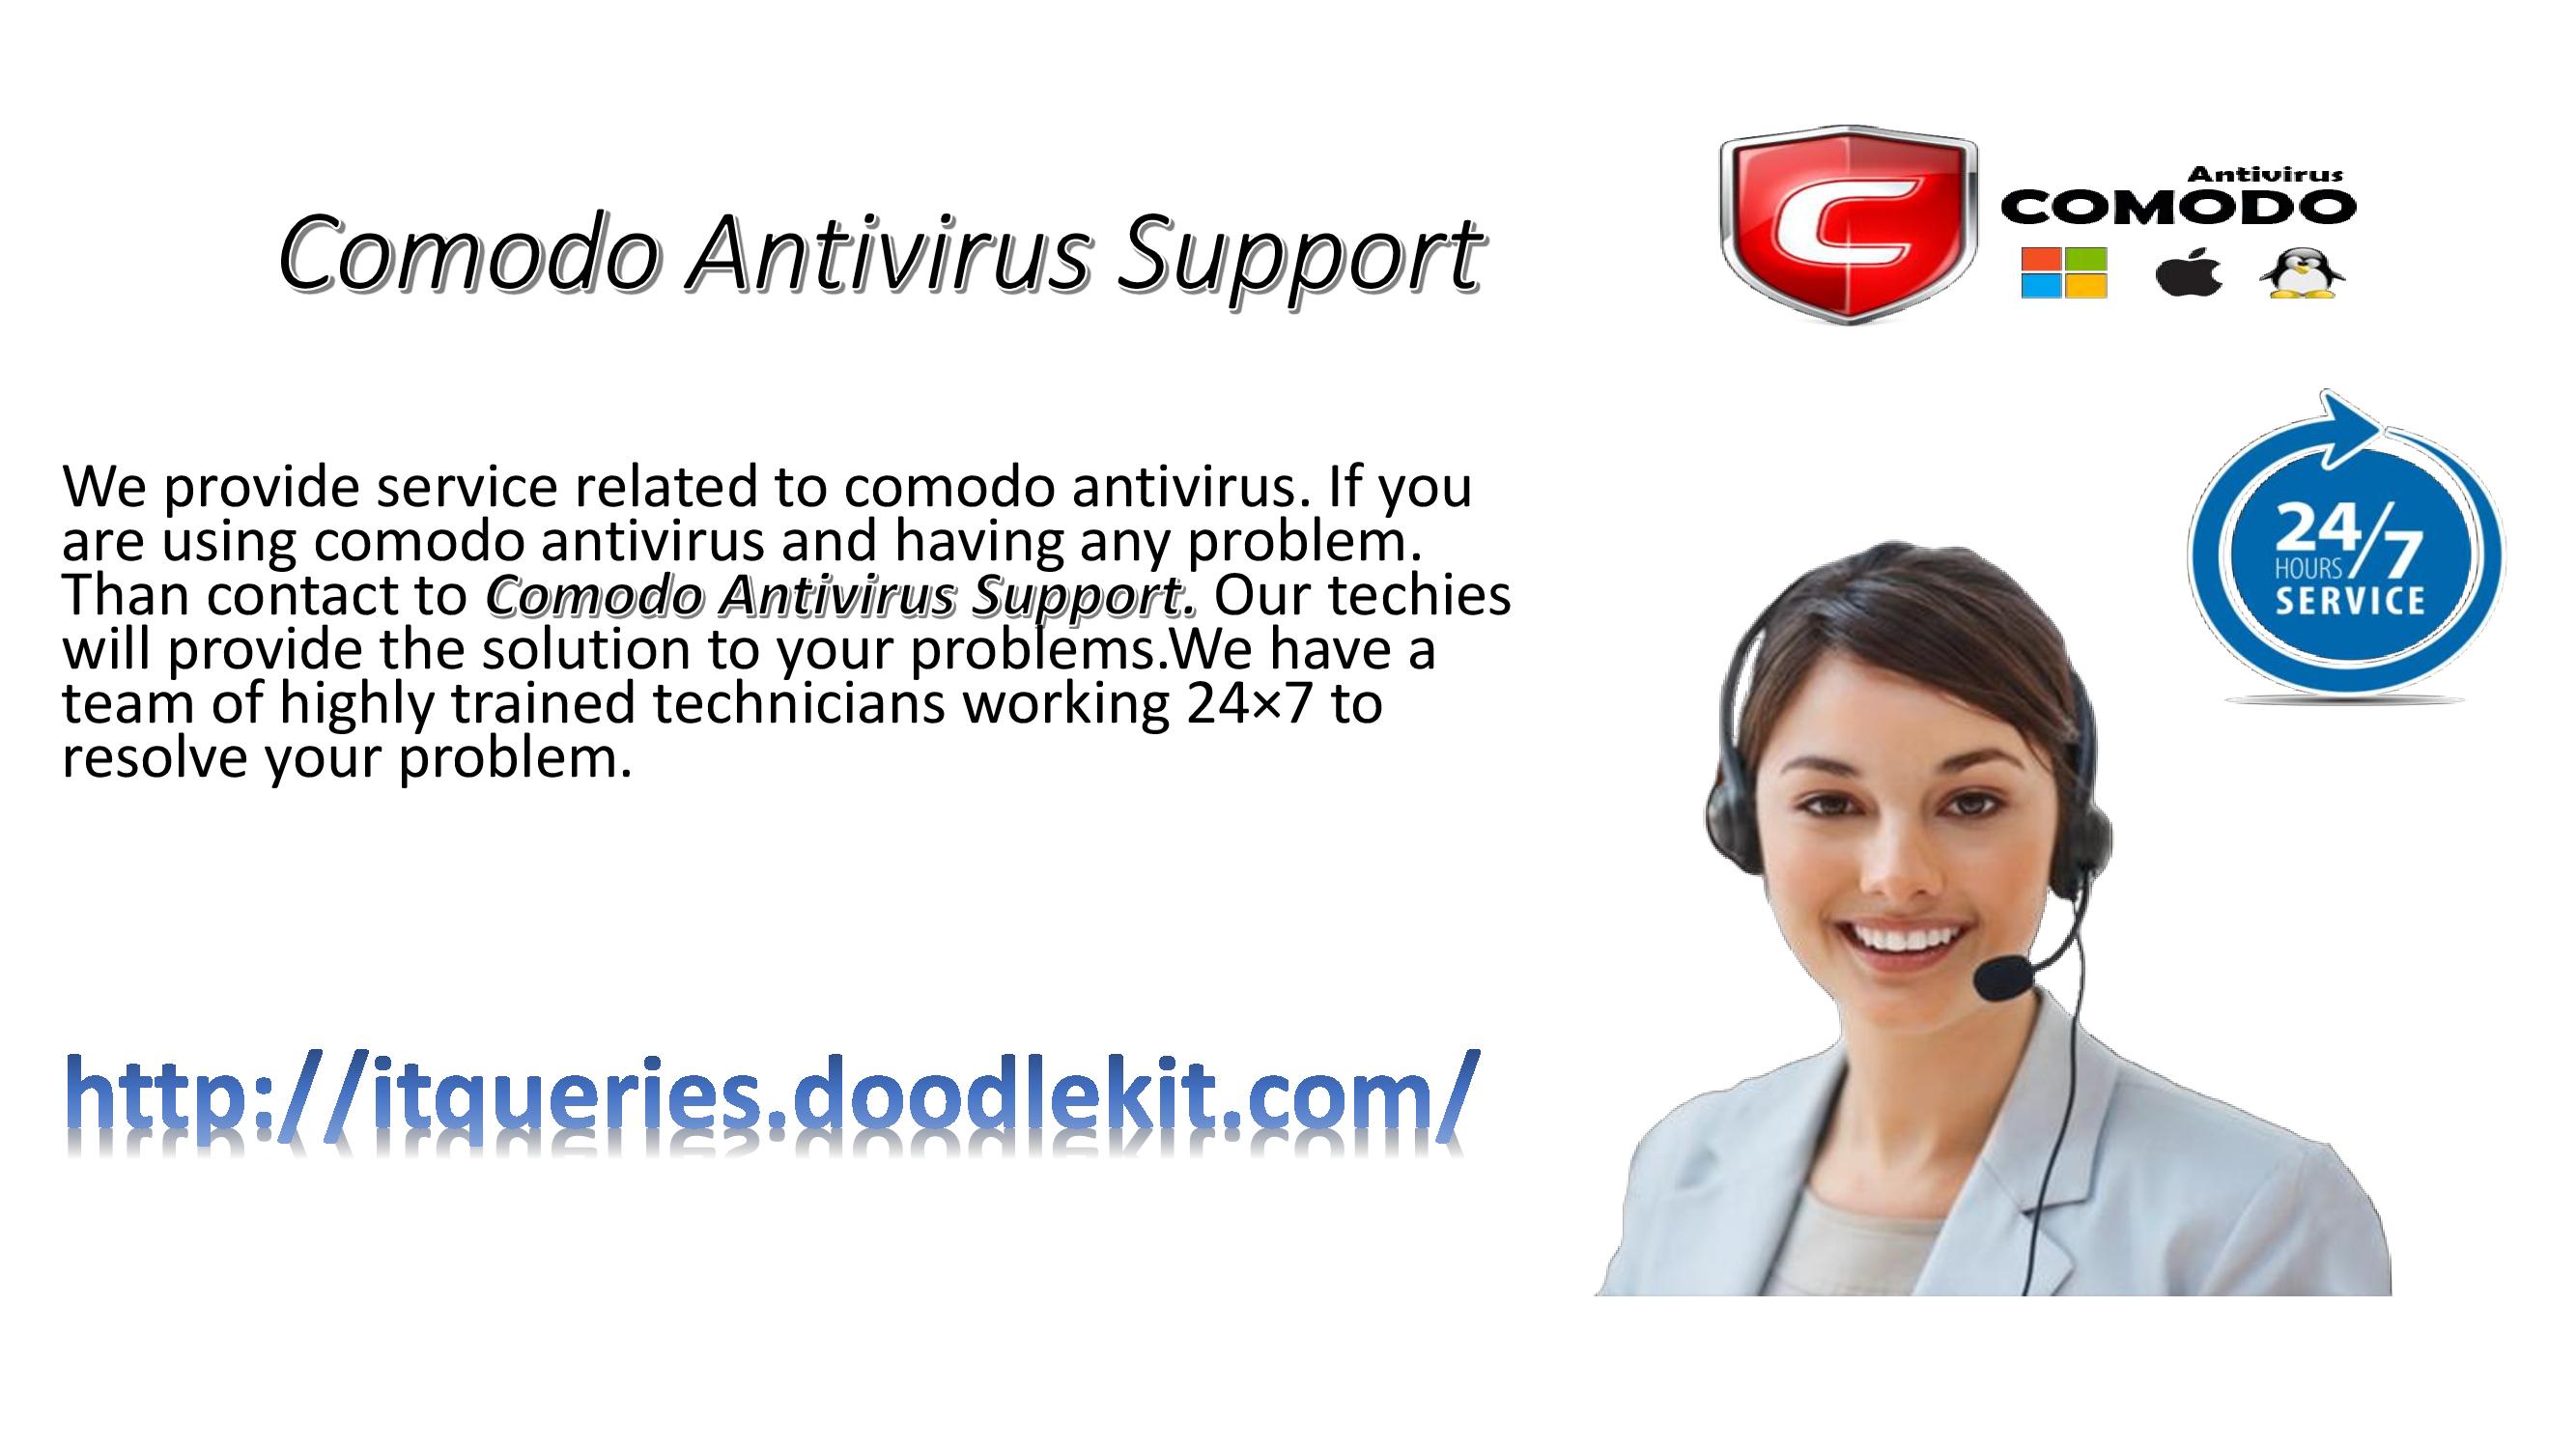 Comodo Antivirus Support